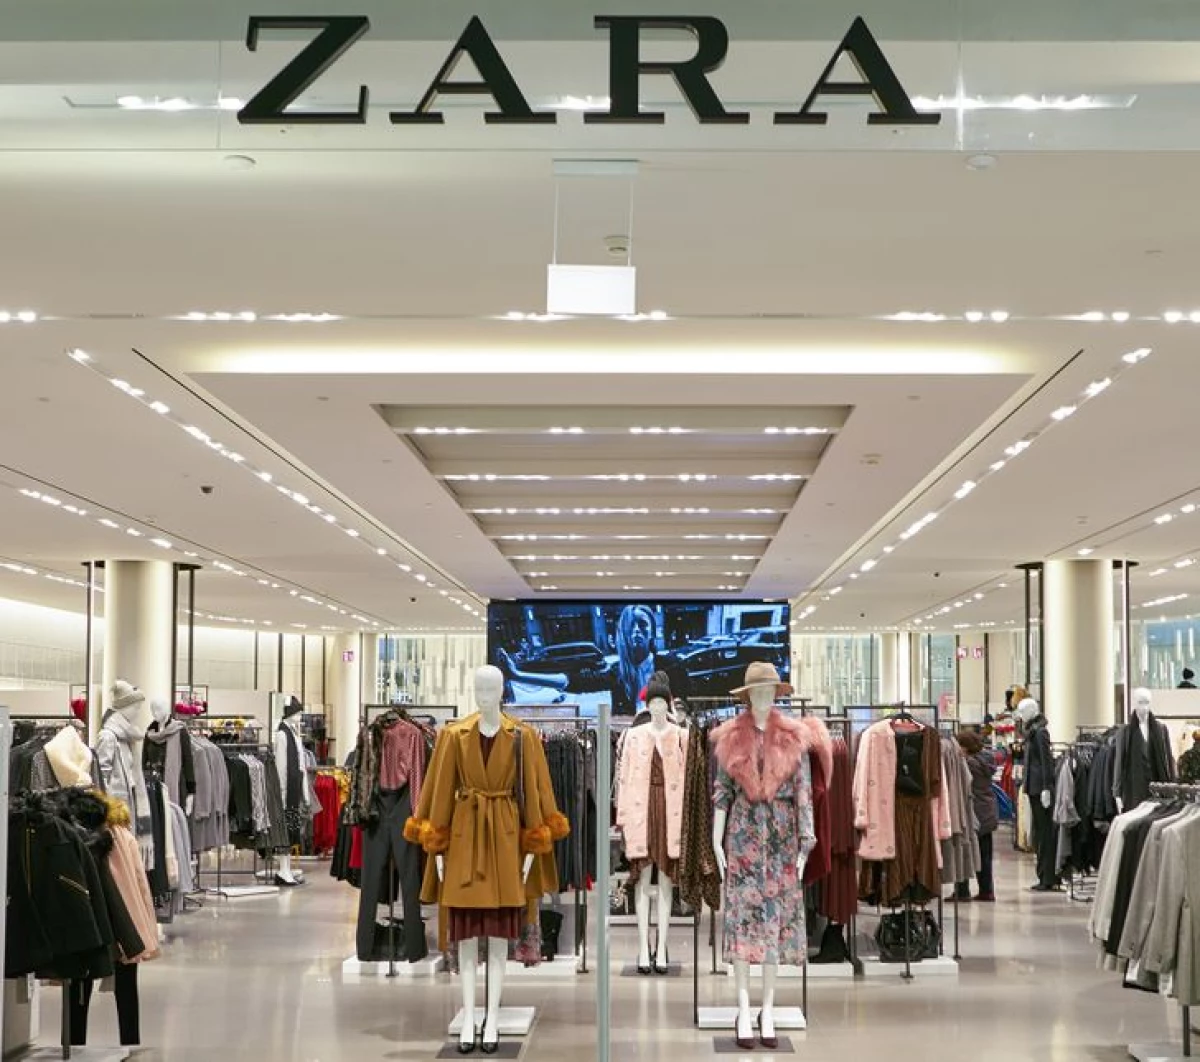 Quanto povero ragazzo spagnolo fondò il marchio Zara, i cui vestiti sono indossati tranne lui 1454_2